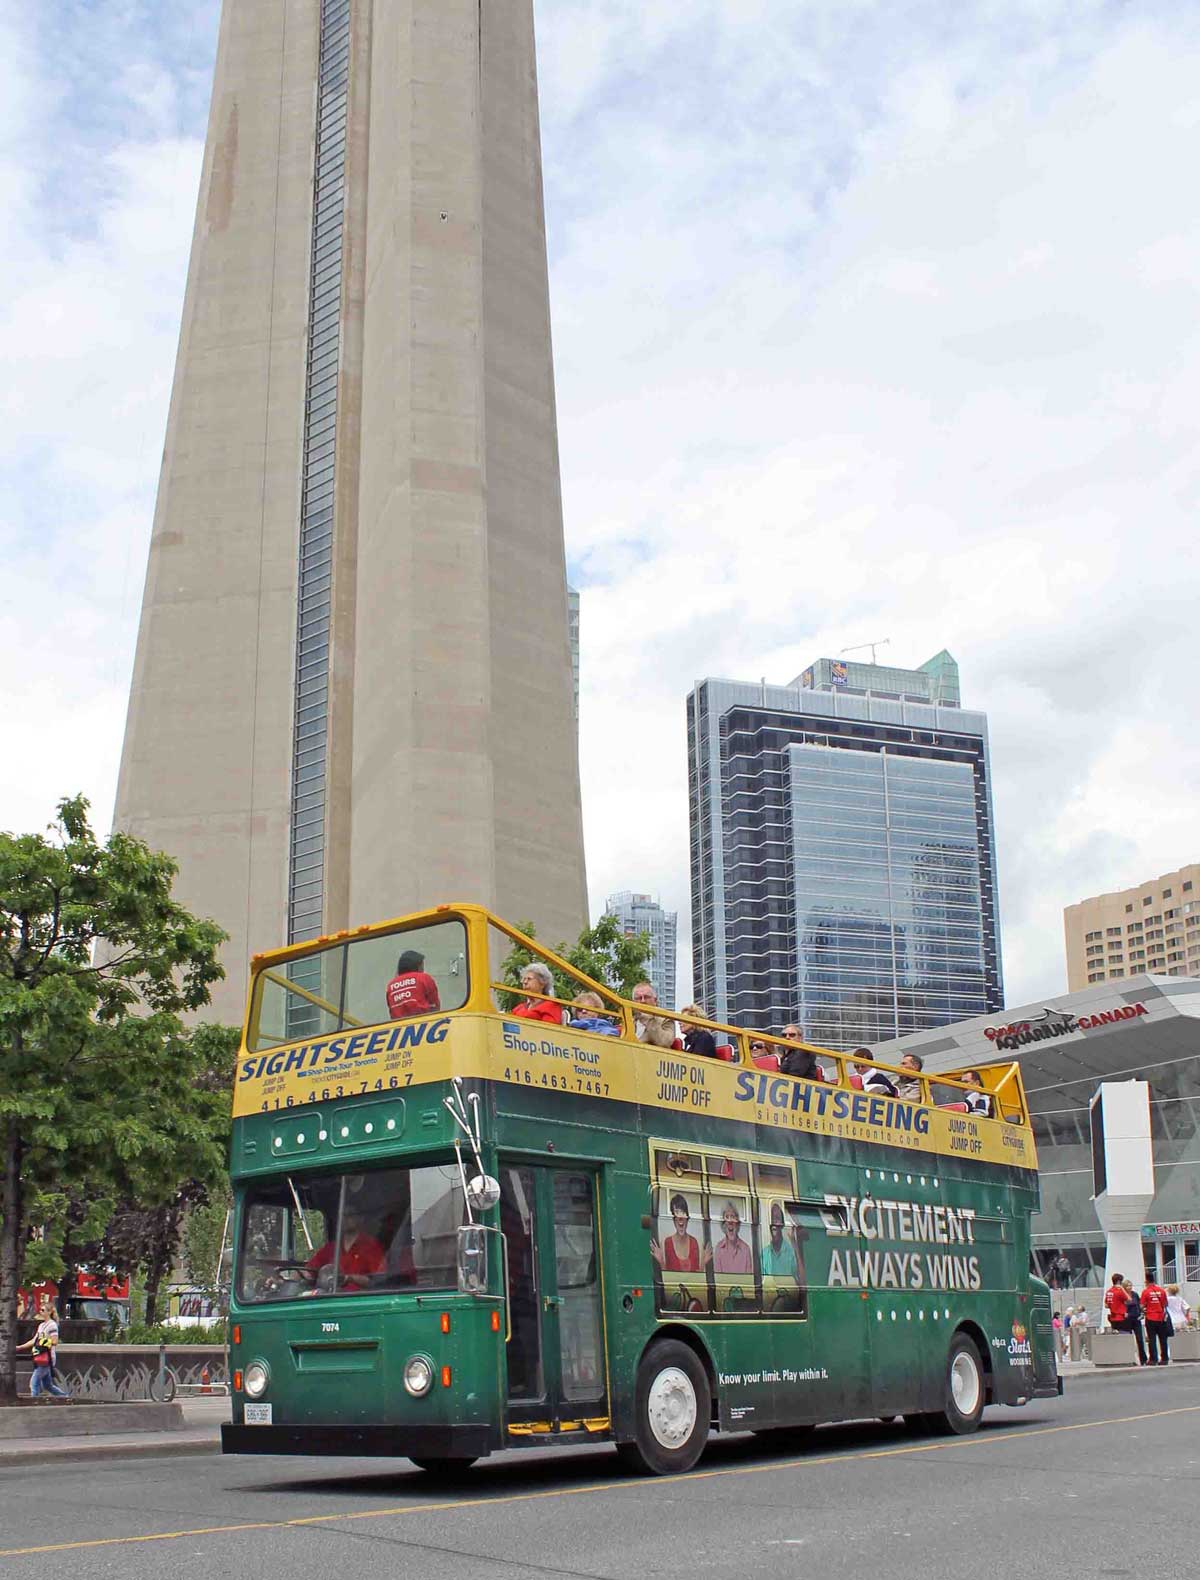 OLG Slots Bus Wrap in Toronto